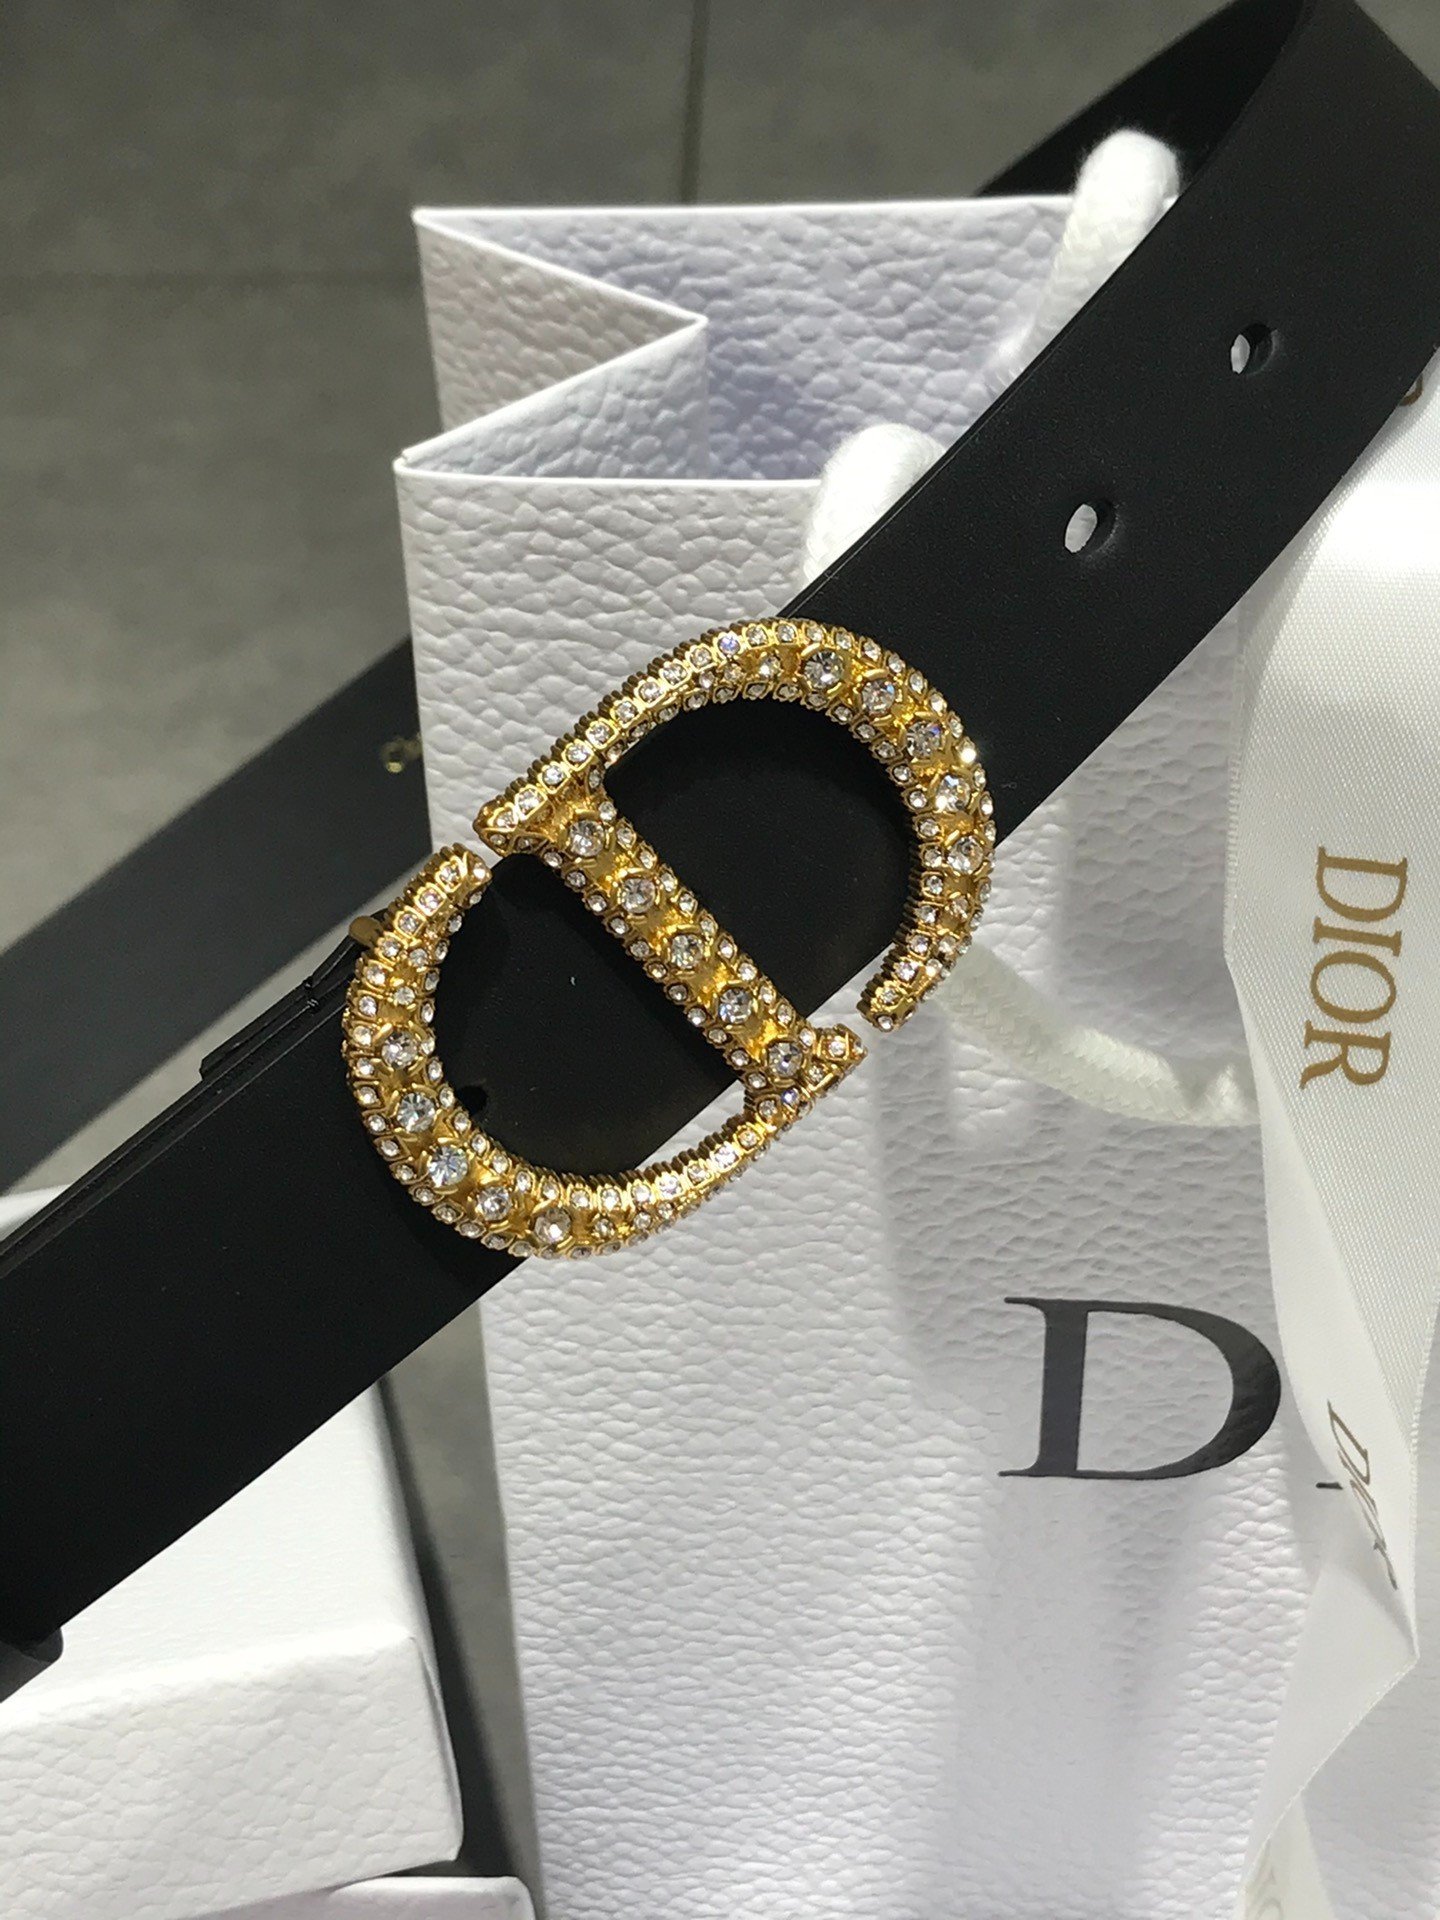 Thắt Lưng Dior Da Bê Màu Đen Siêu Cấp Khóa Kim Cương Size 3cm